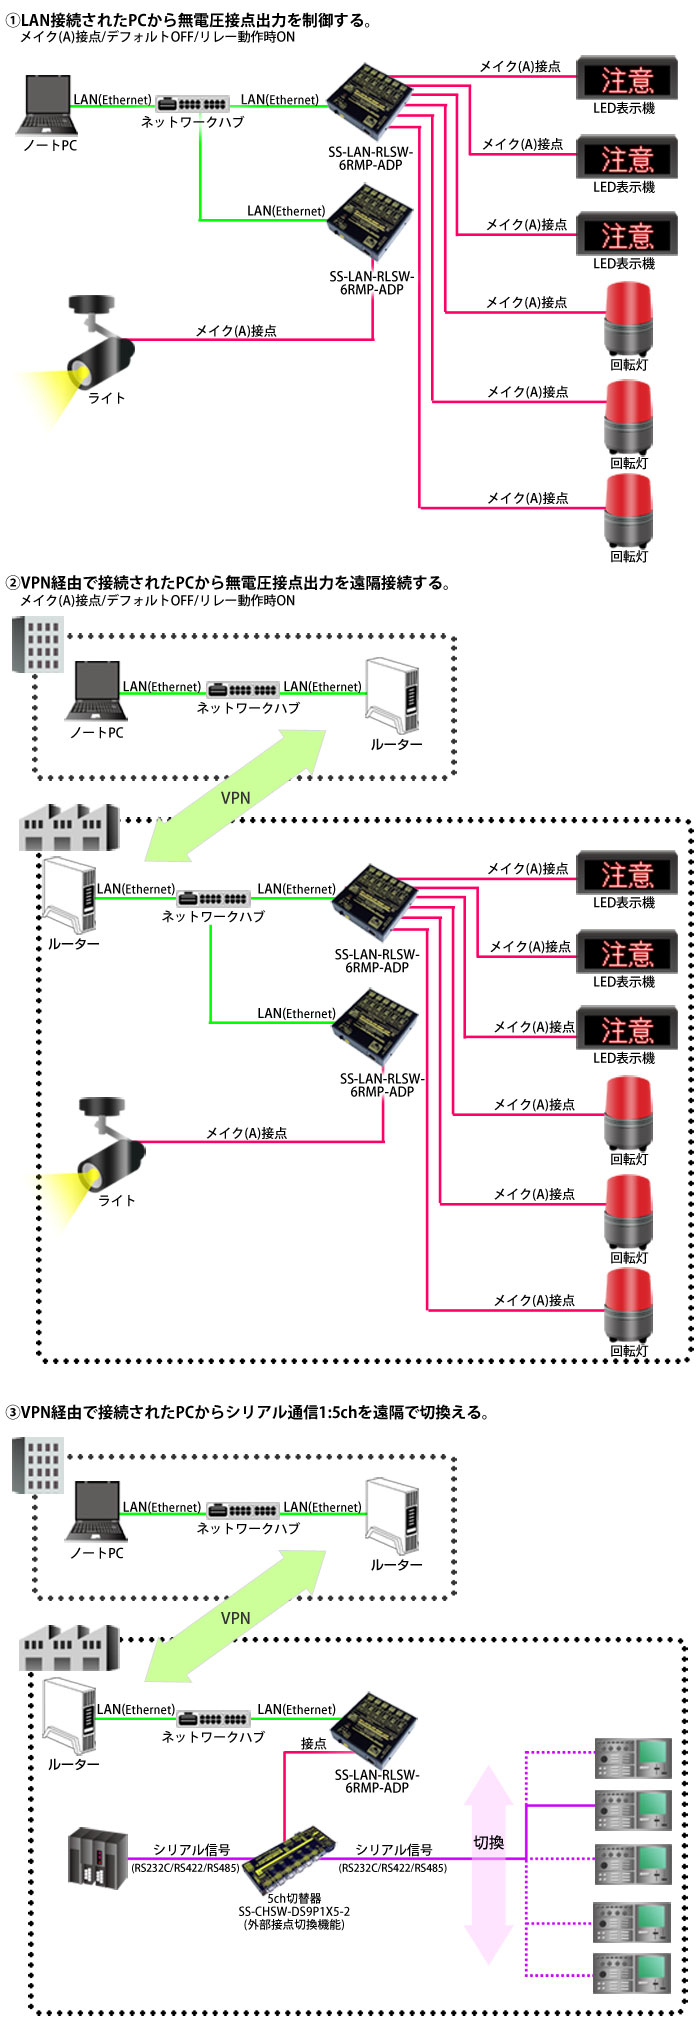 SS-LAN-RLSW-6RMP-ADP接続例